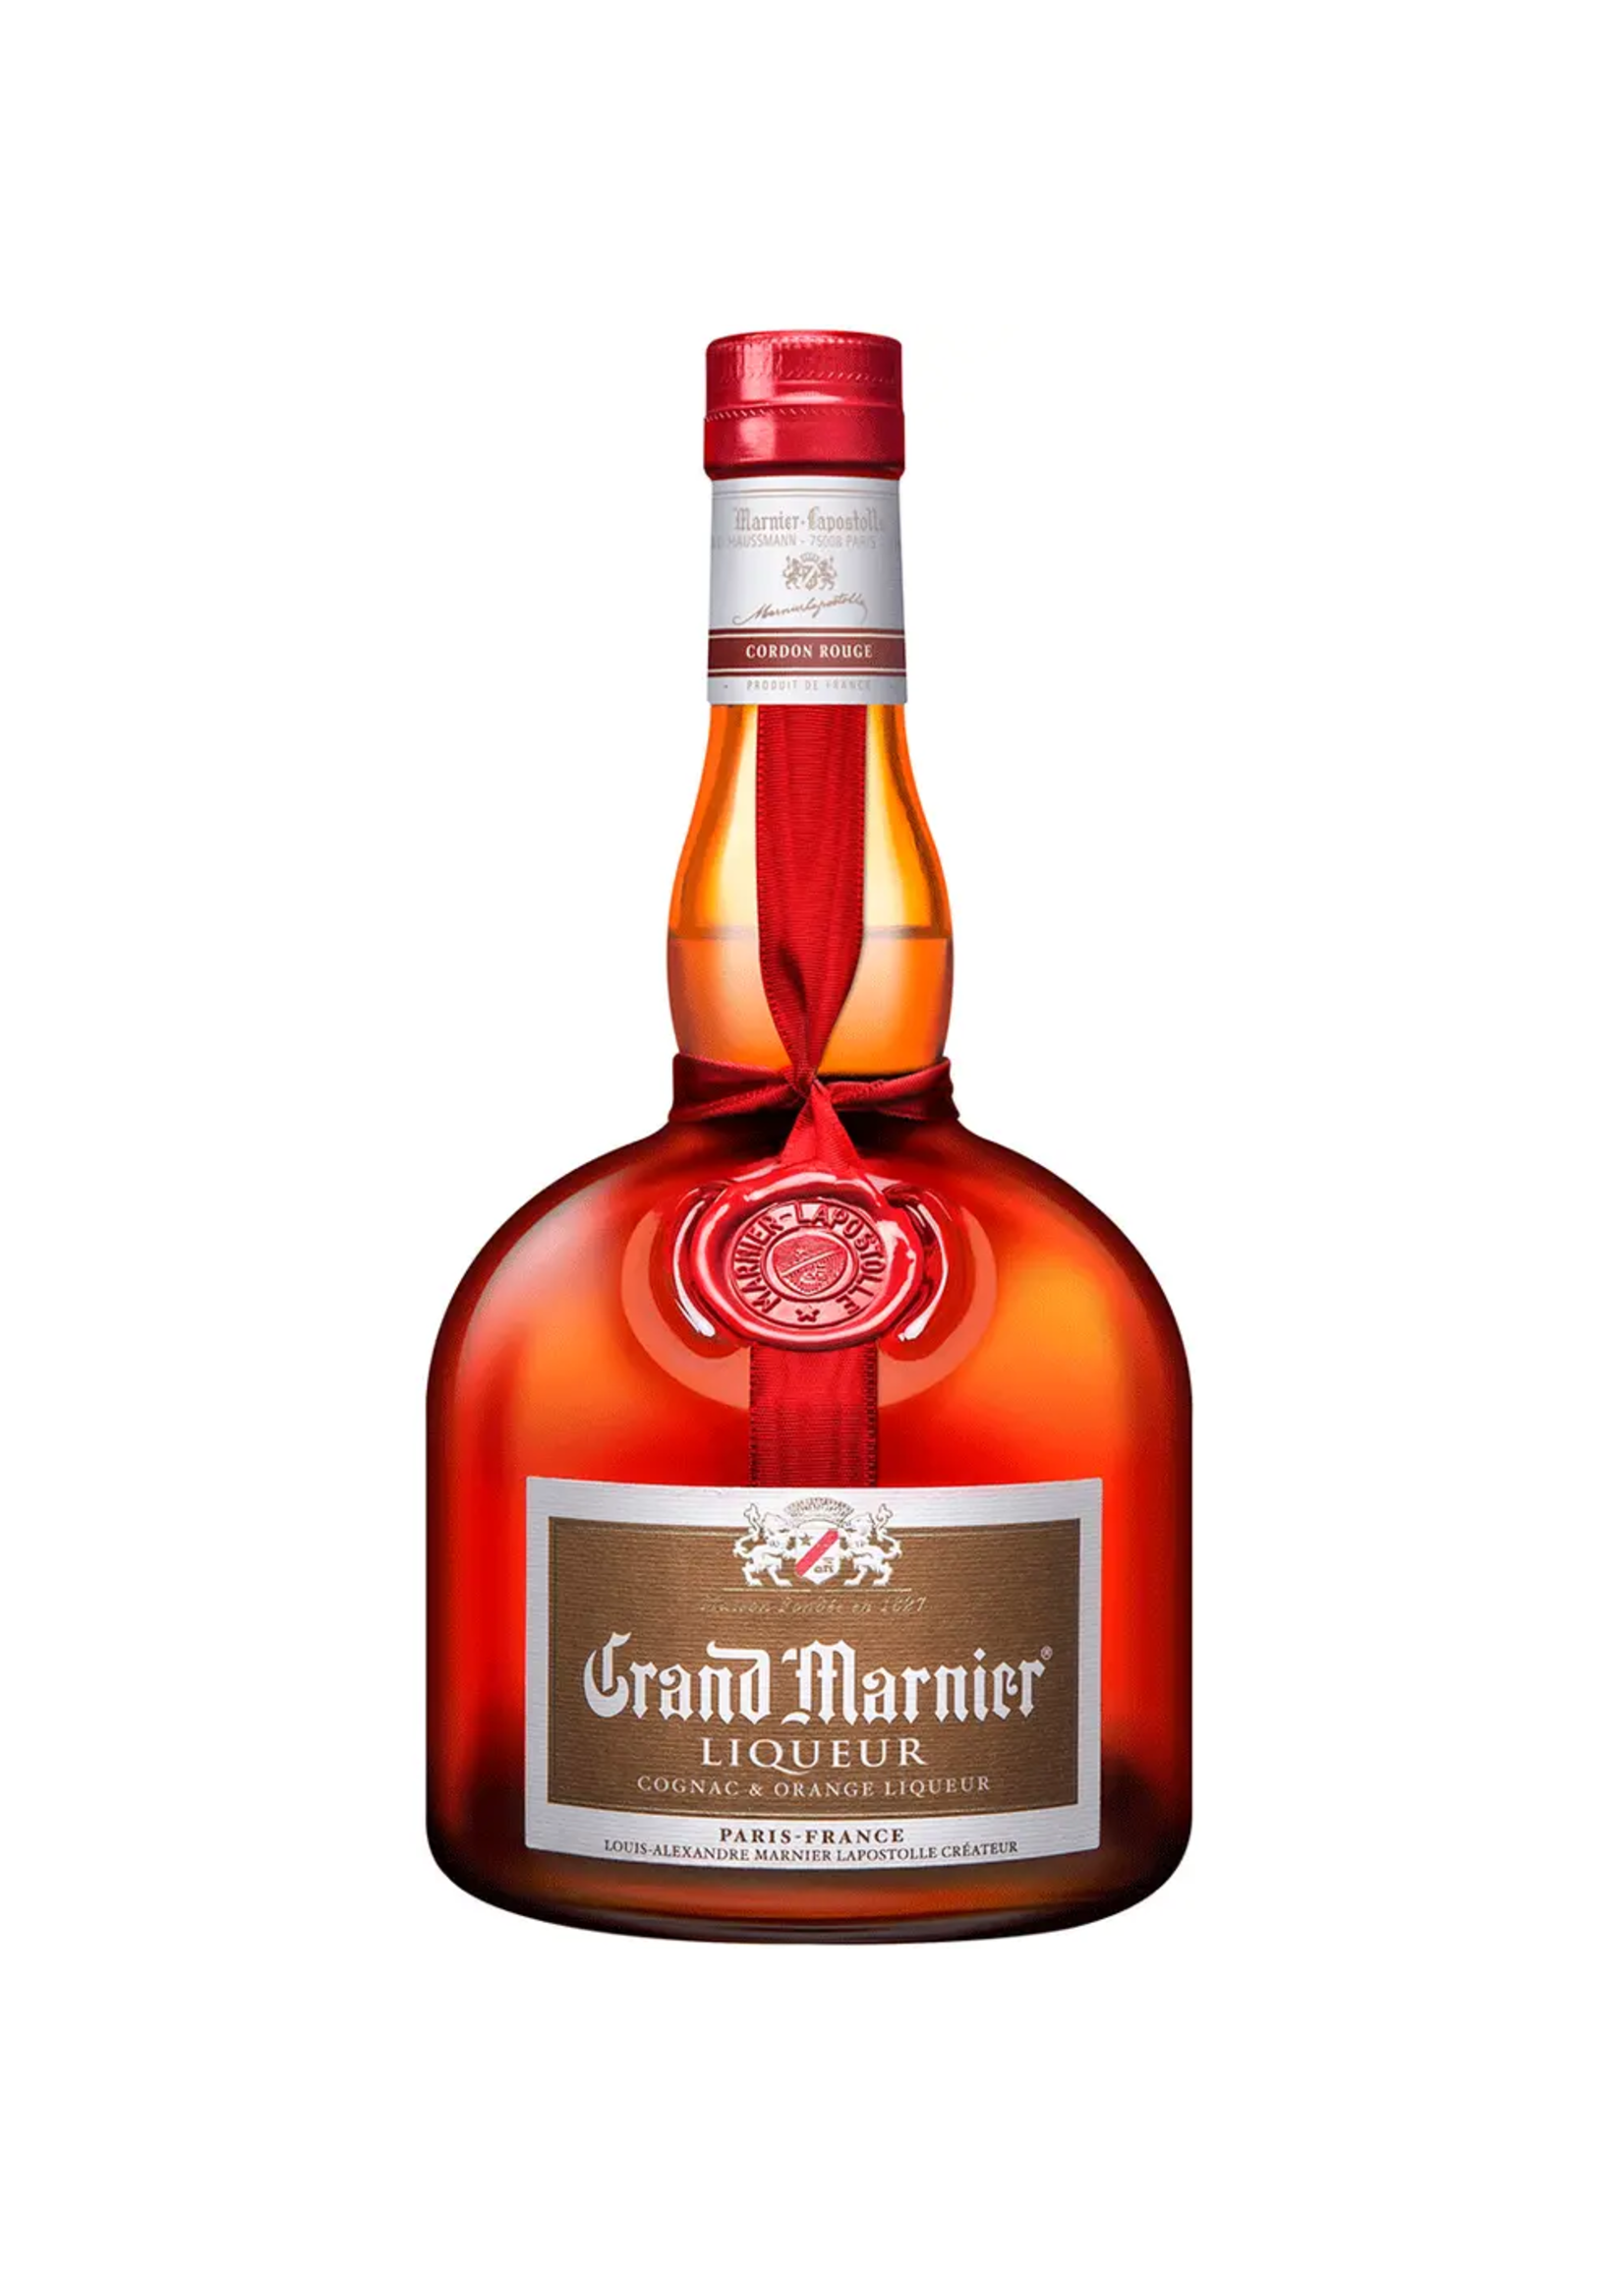 Grand Marnier Cognac & Orange Liqueur Cordon Rouge 80Proof 750ml